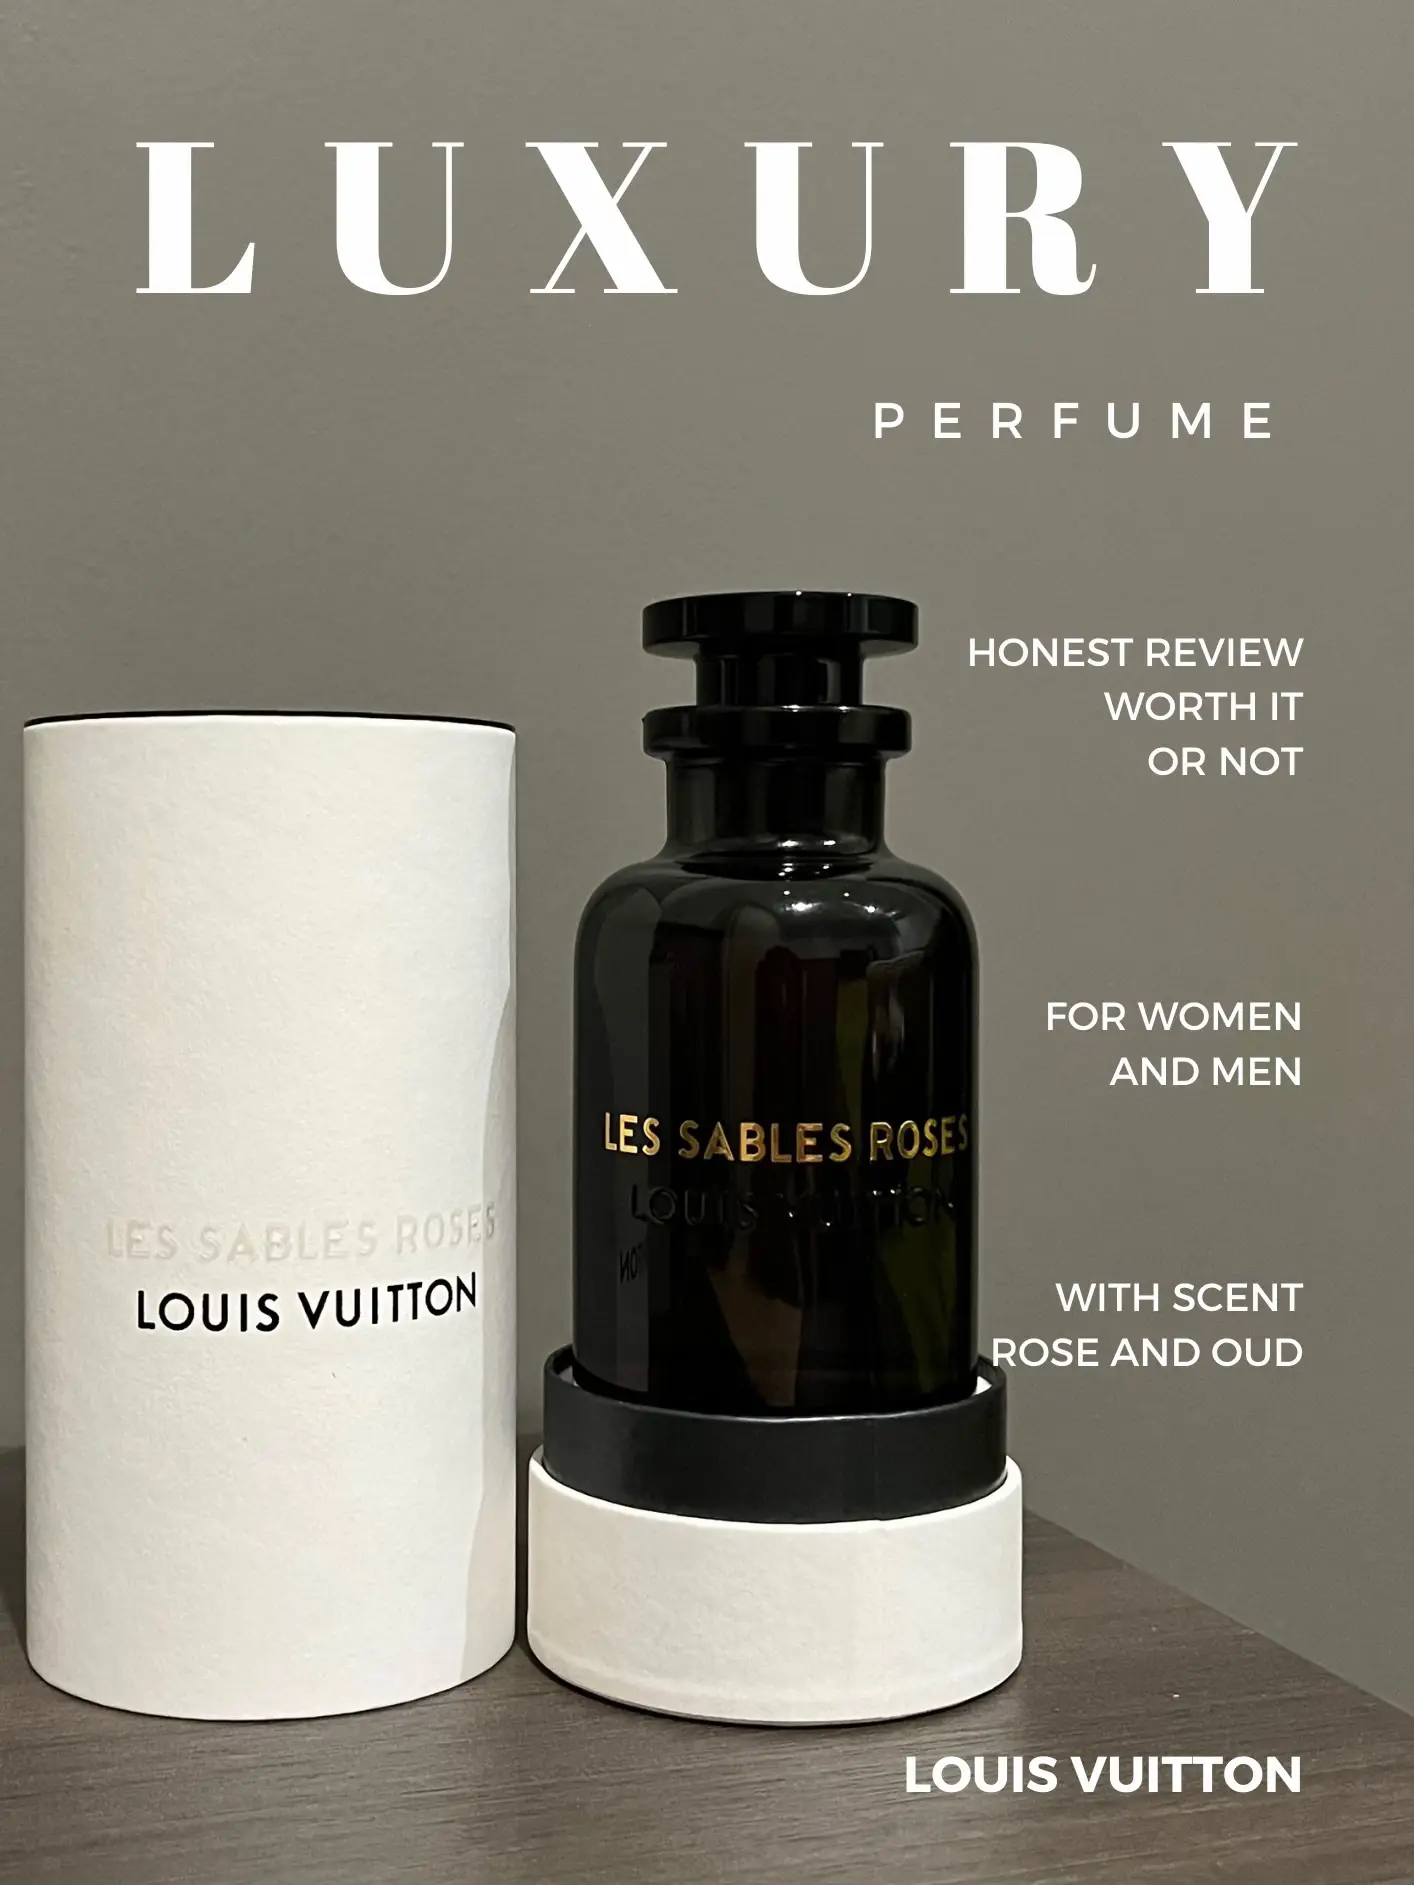 Louis Vuitton Les Sables Roses Reviews